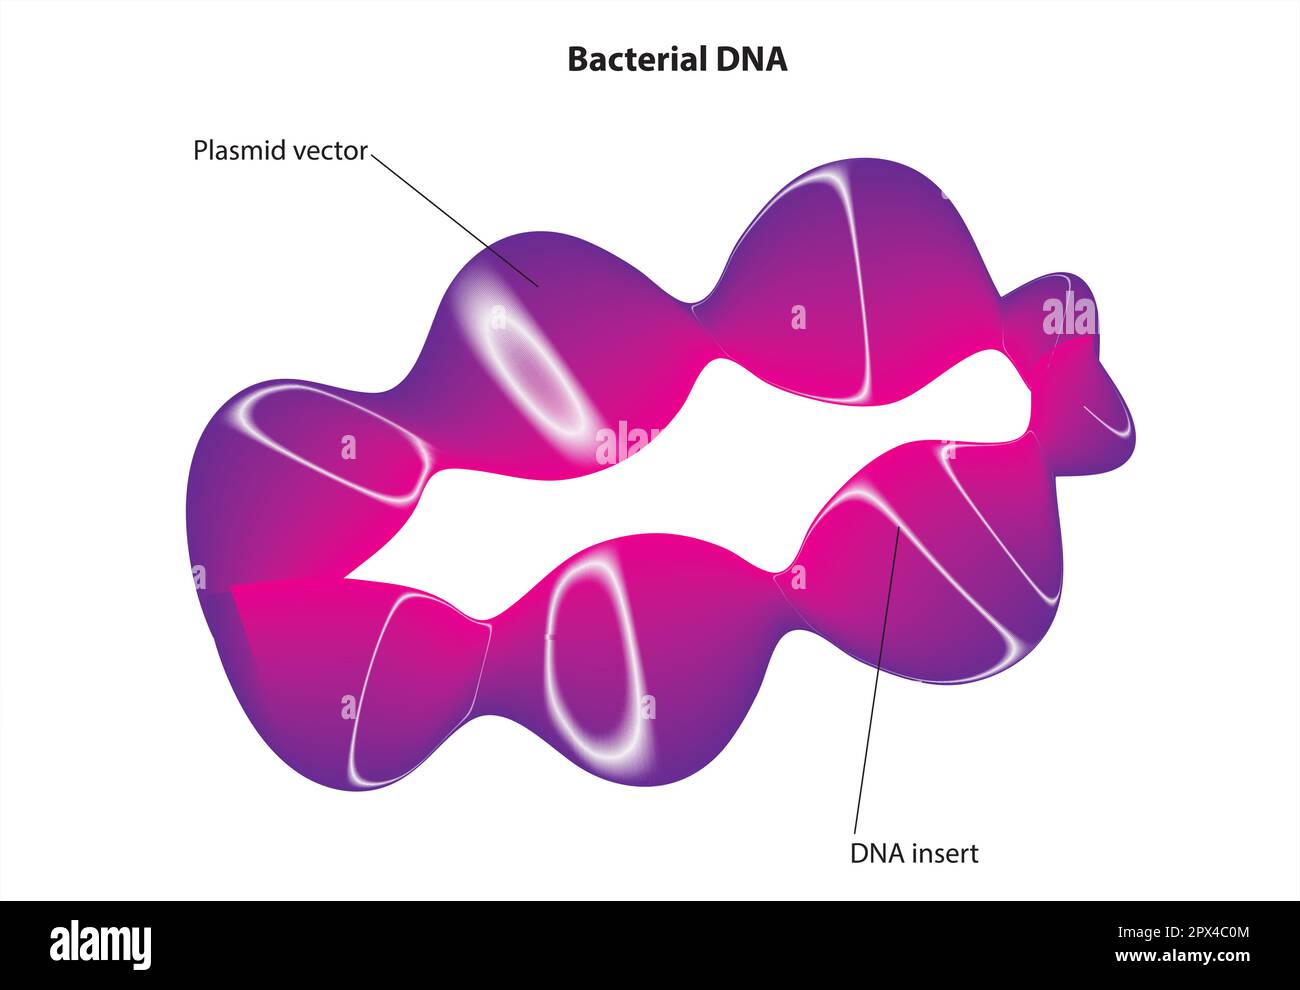 ADN bactérien Illustration de Vecteur